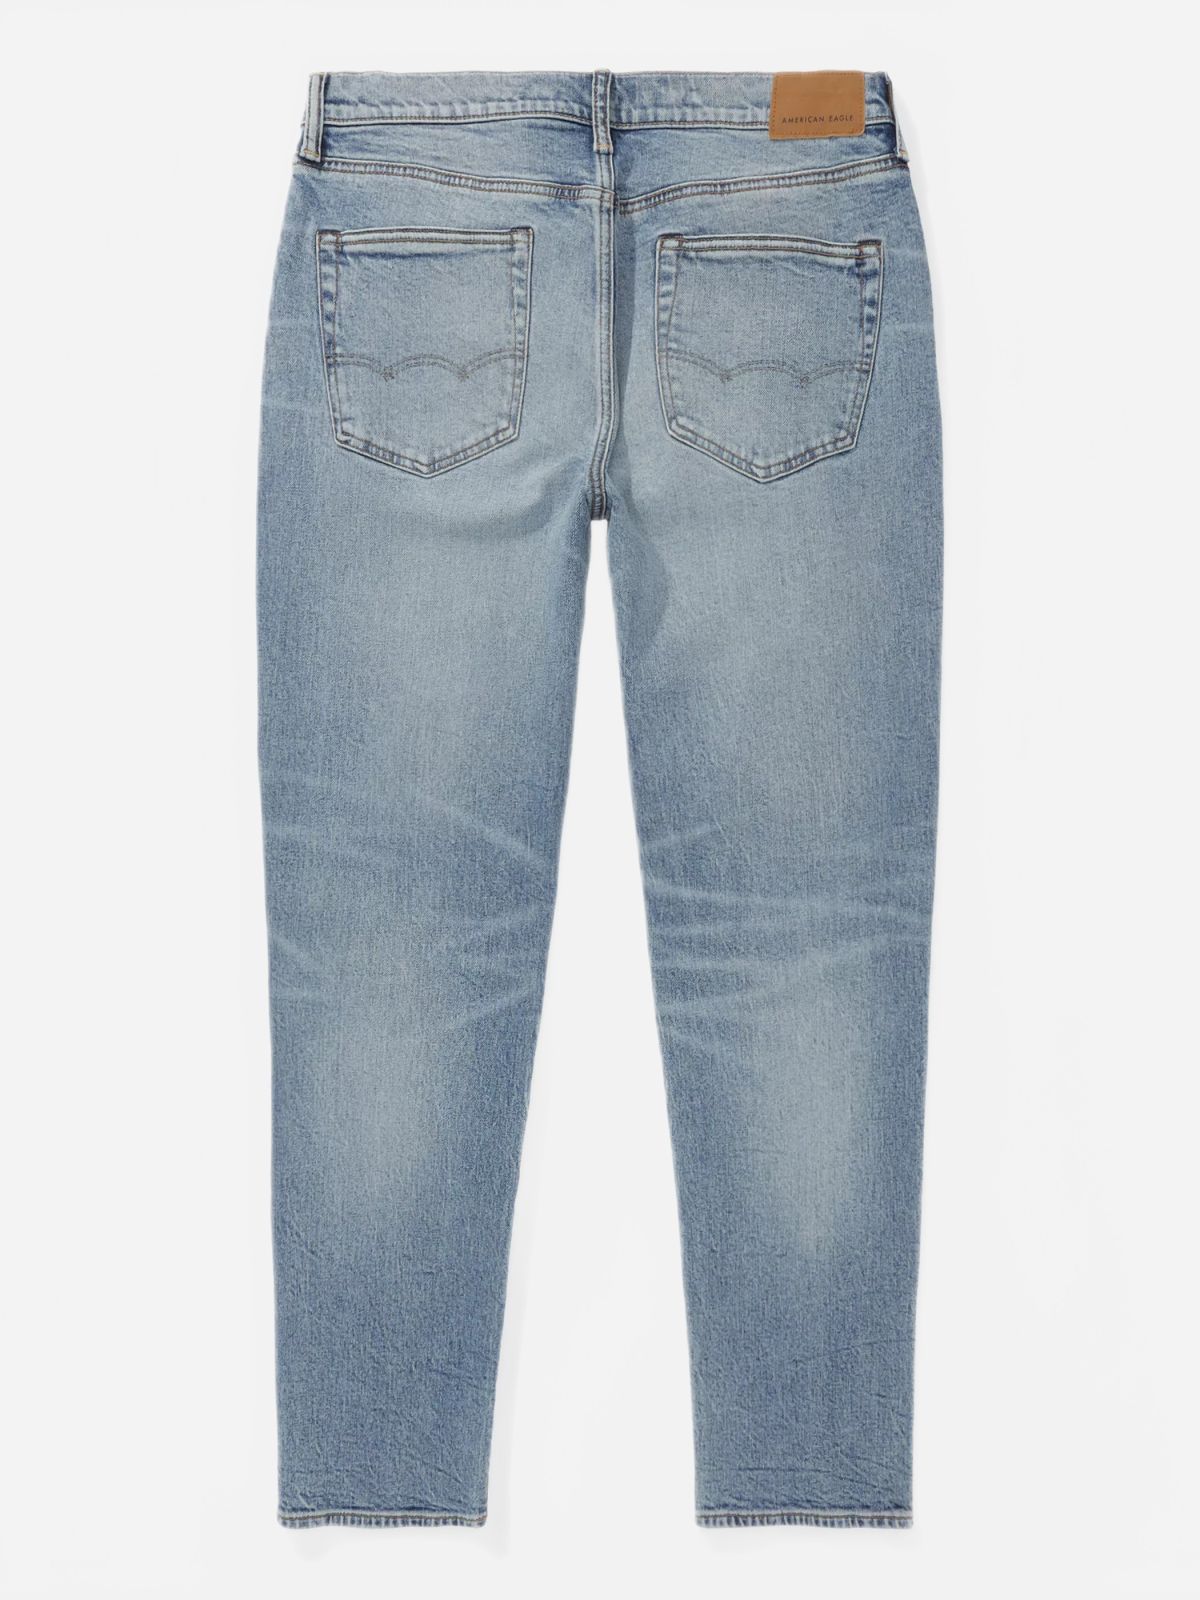  ג'ינס ווש בגזרה ישרה / גברים של AMERICAN EAGLE